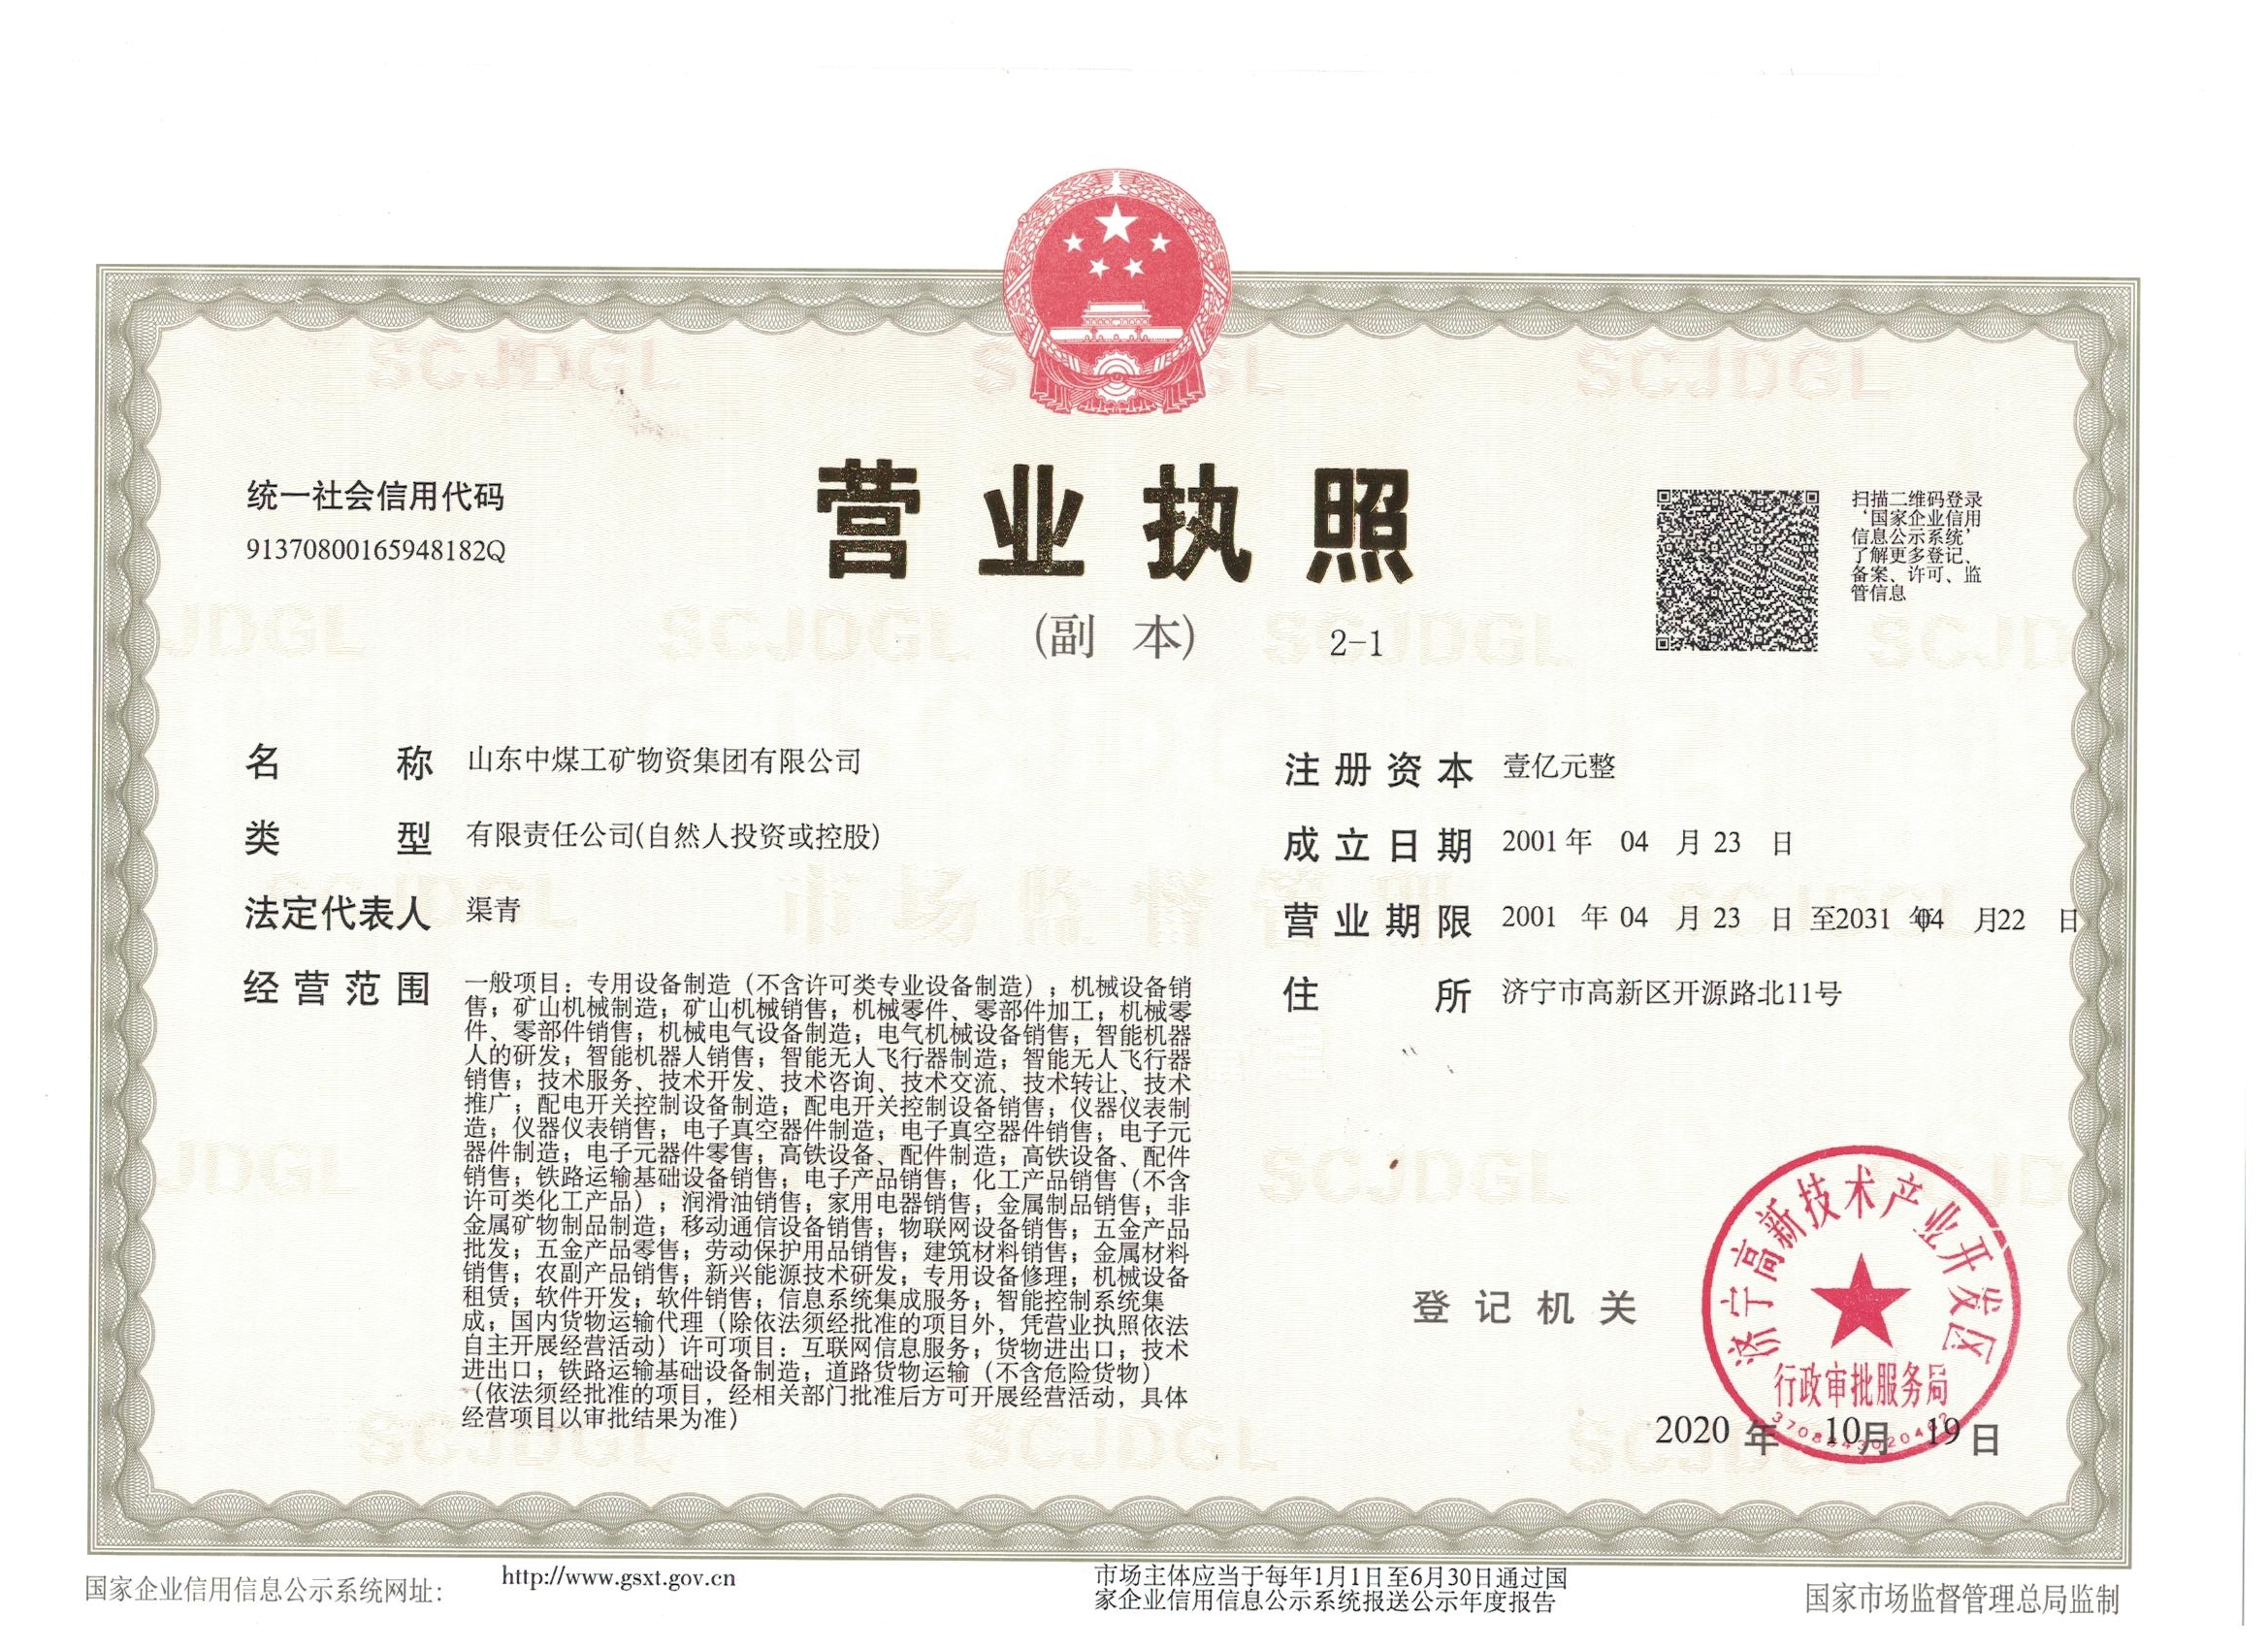 Company License